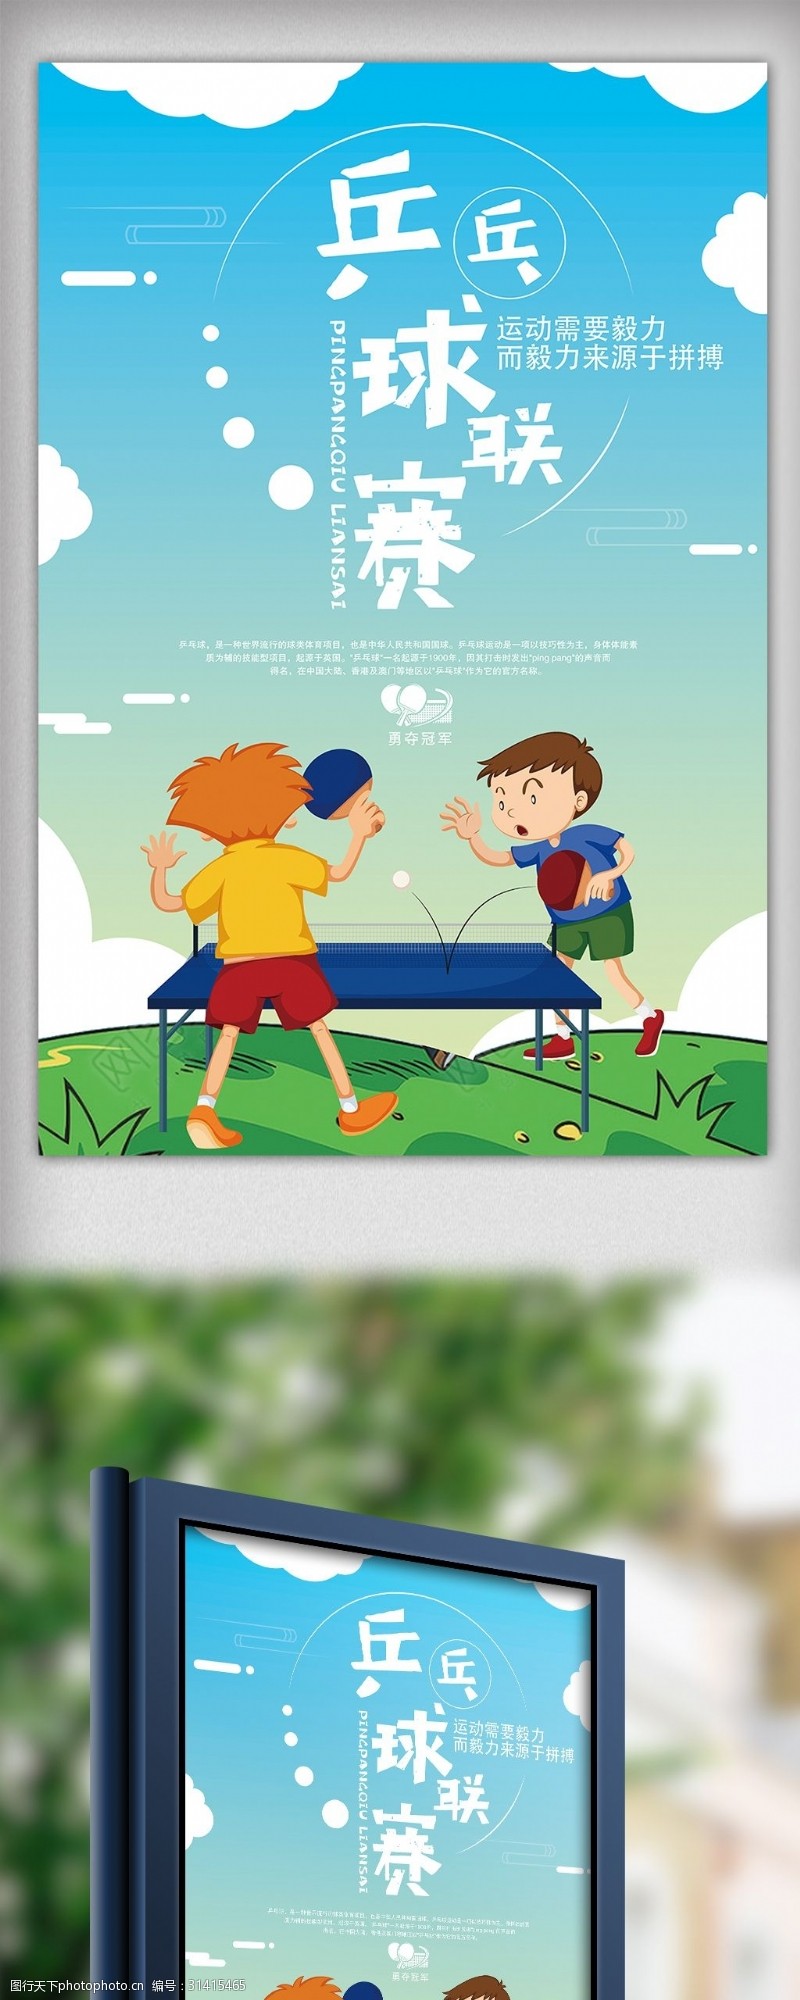 扁平卡通插画风格少儿乒乓球比赛海报